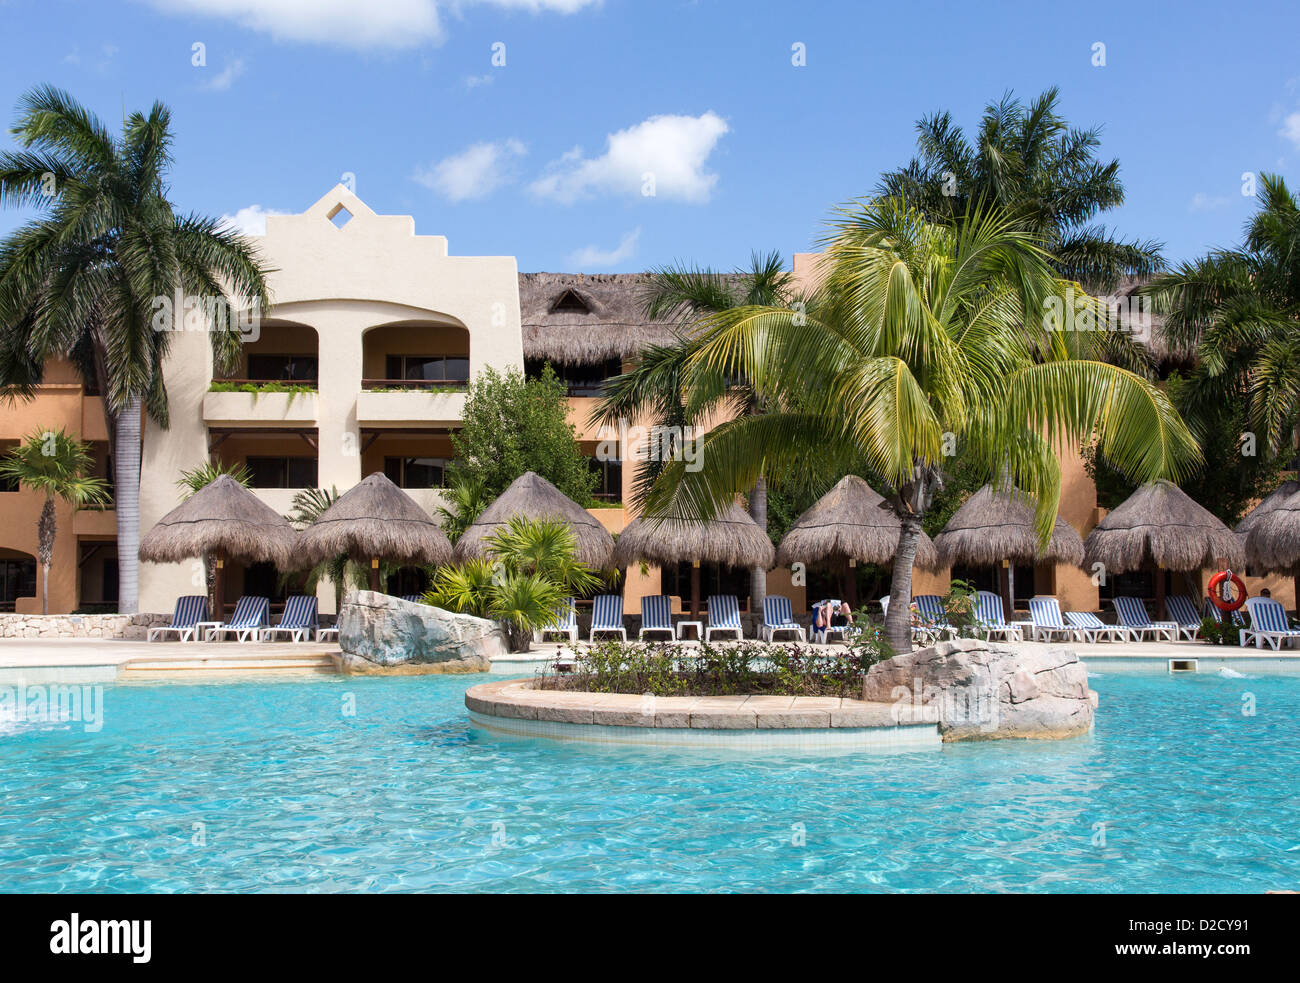 Area della piscina presso il lussuoso resort all-inclusive, Riviera Maya, Messico Foto Stock